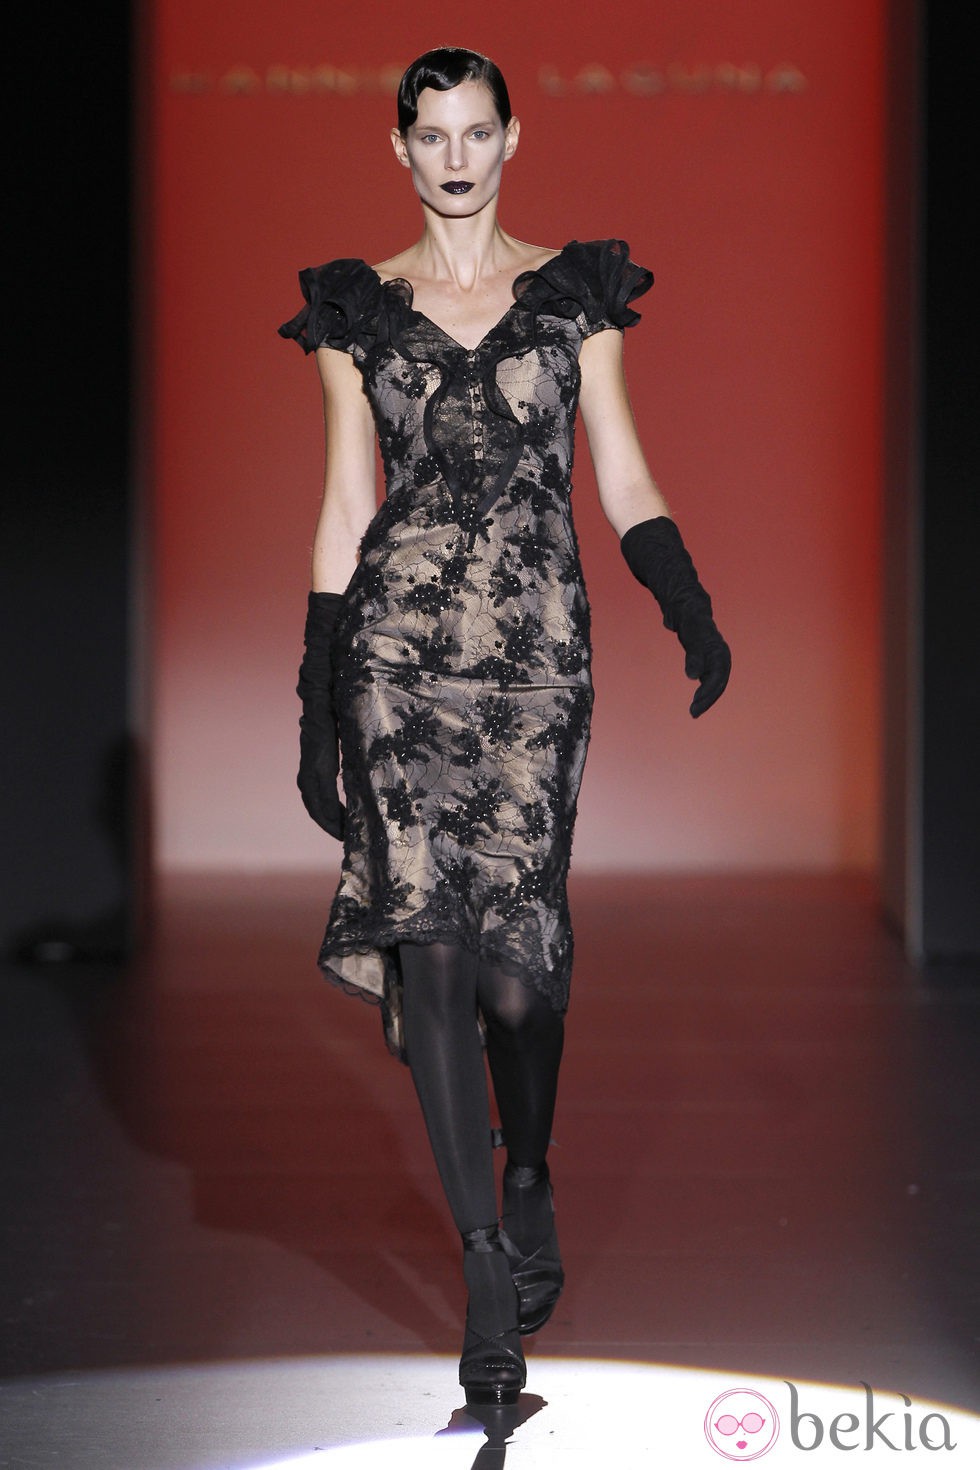 Vestido corto de encaje de Hannibal Laguna en Fashion Week Madrid